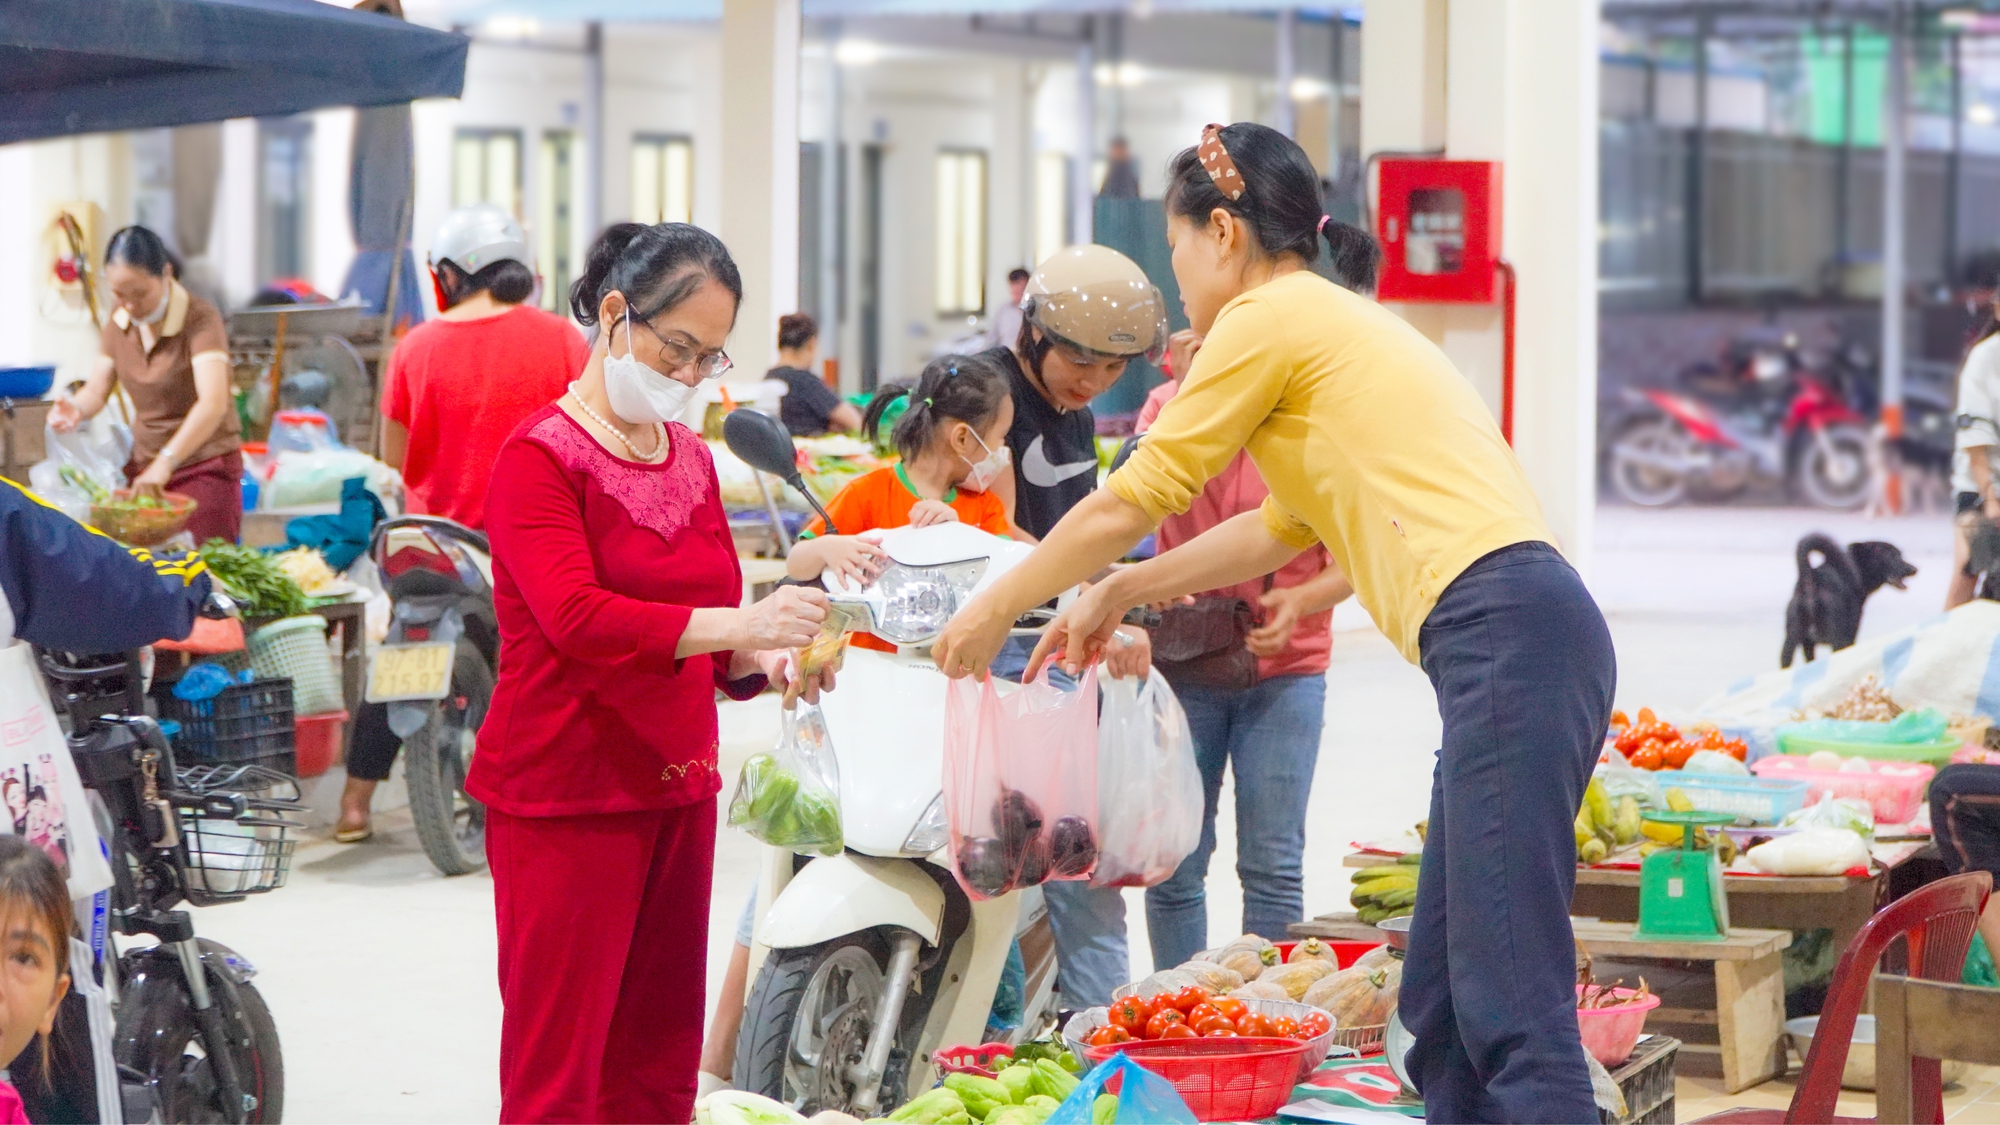 5 lý do hấp dẫn khiến các tiểu thương yêu thích chợ Minh Khai mới ở Bắc Kạn - Ảnh 4.